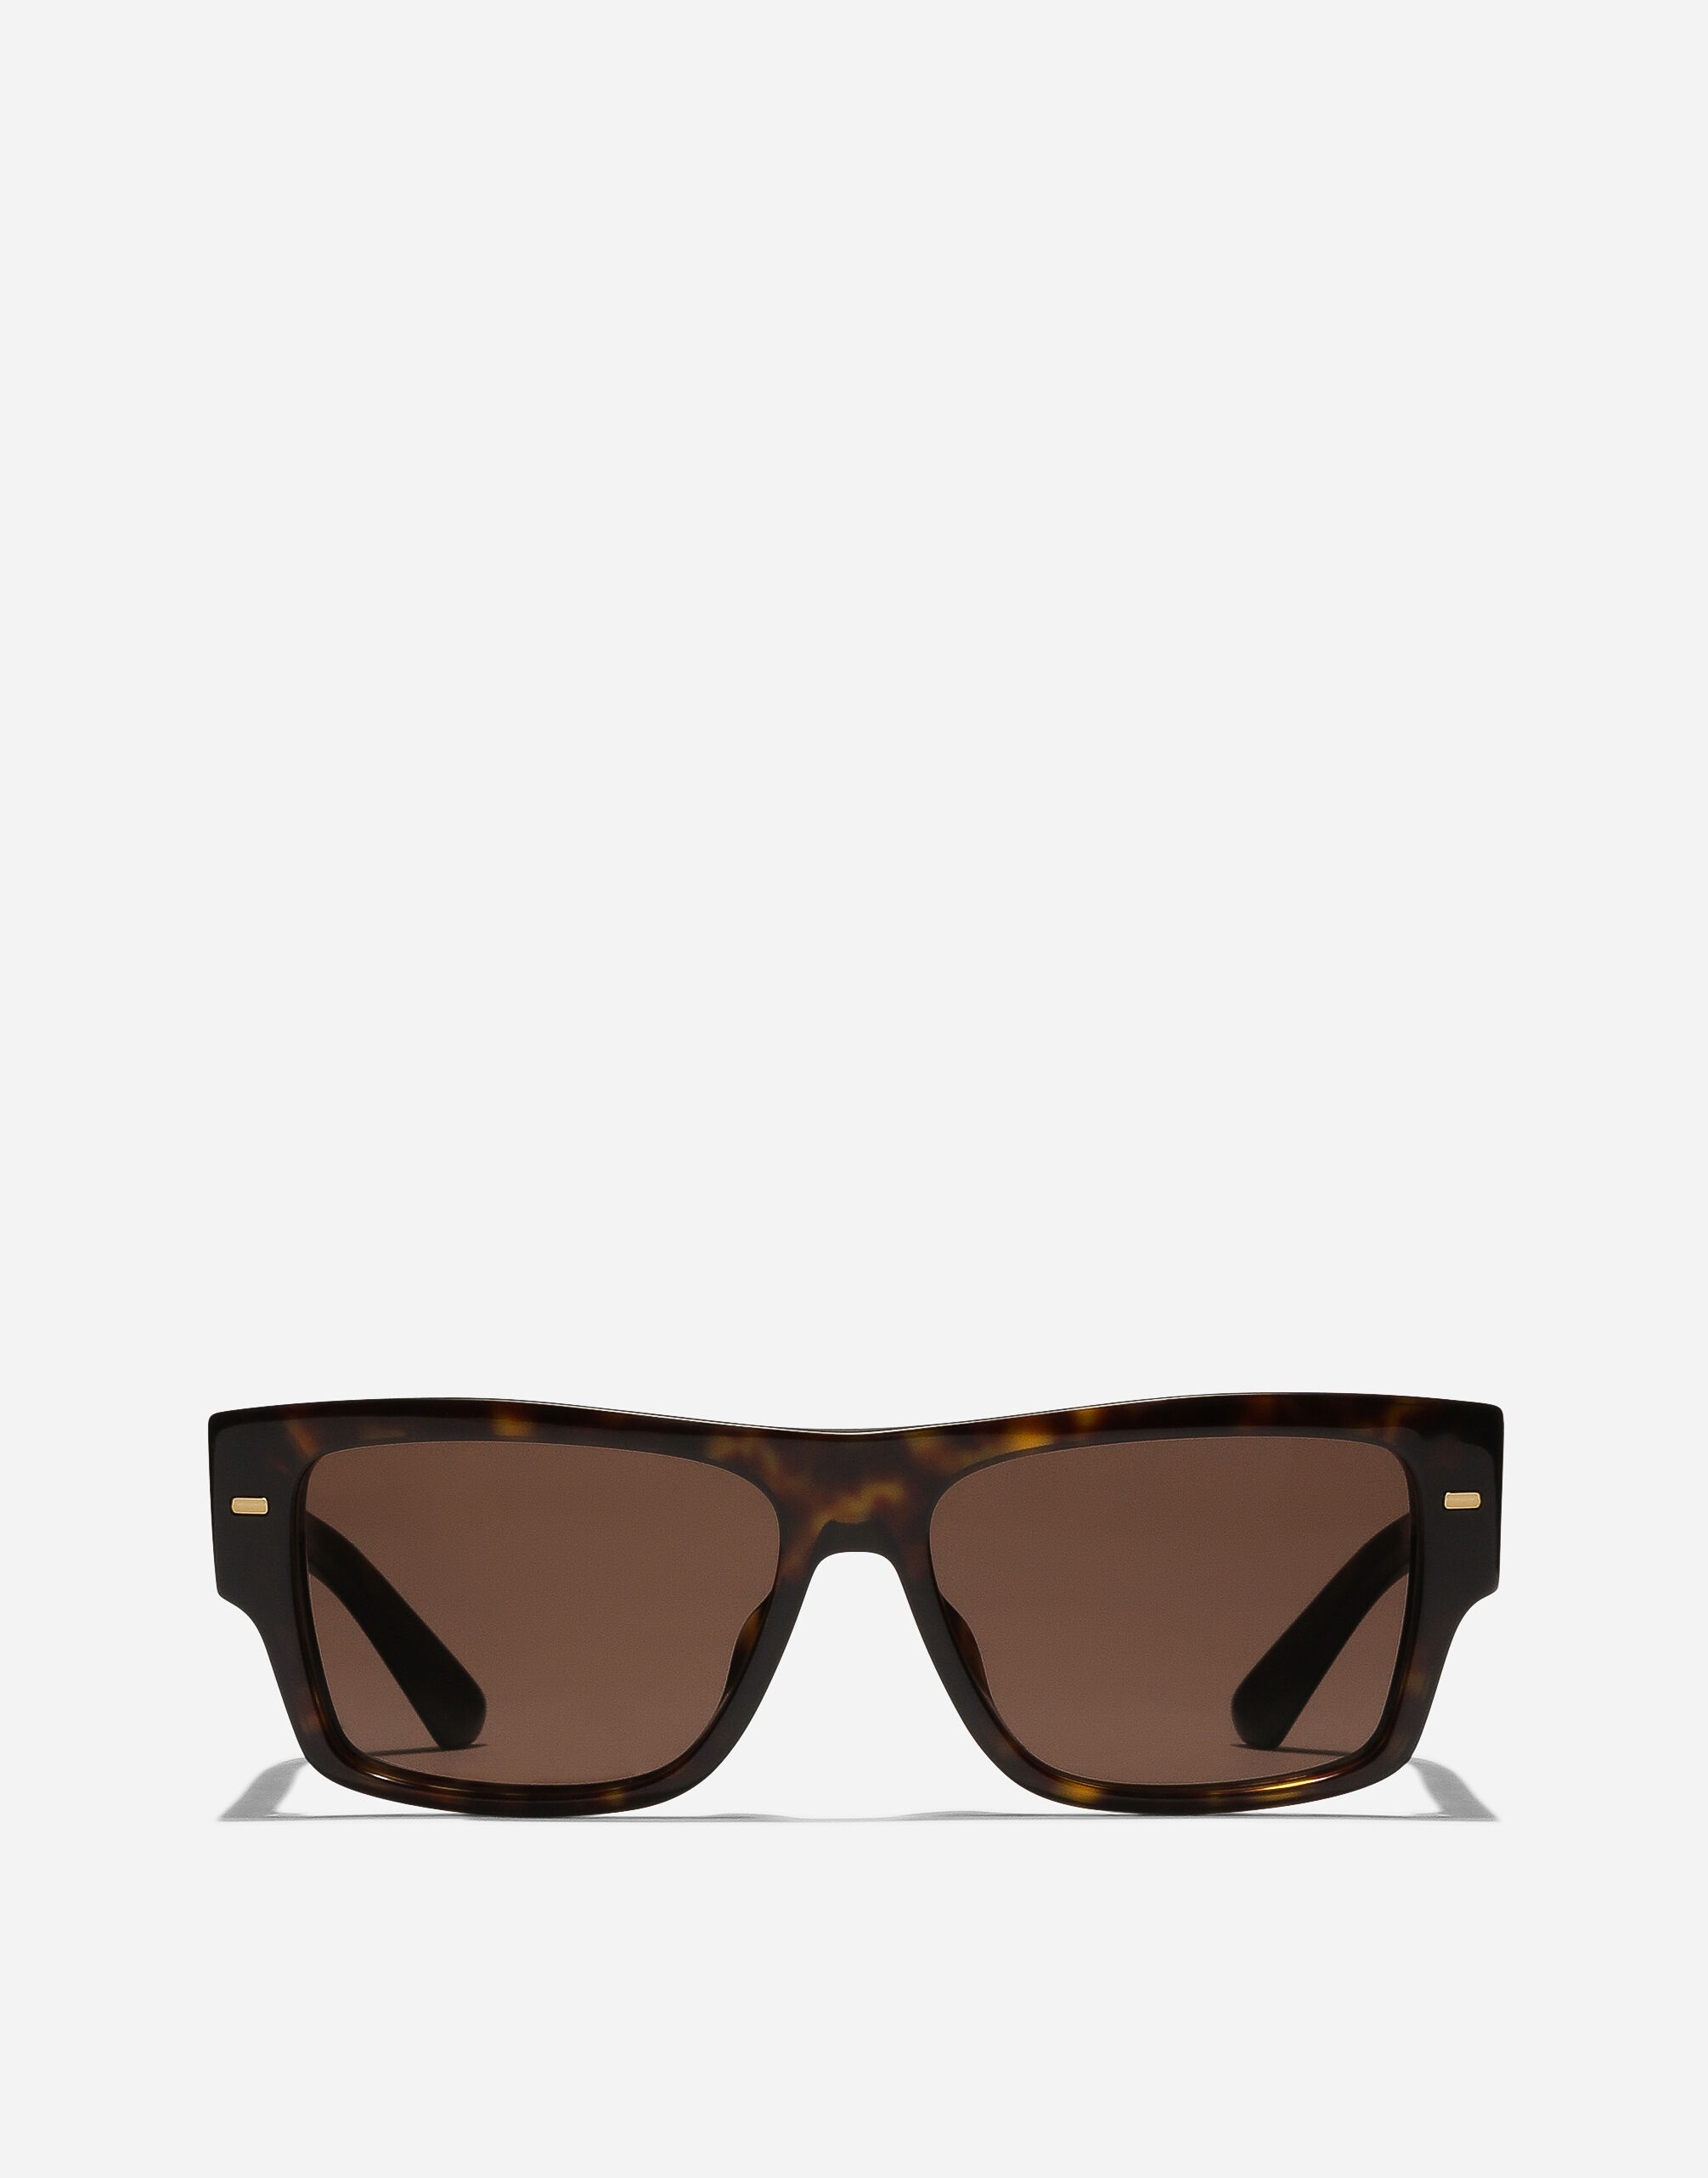 Lusso Sartoriale sunglasses - 1